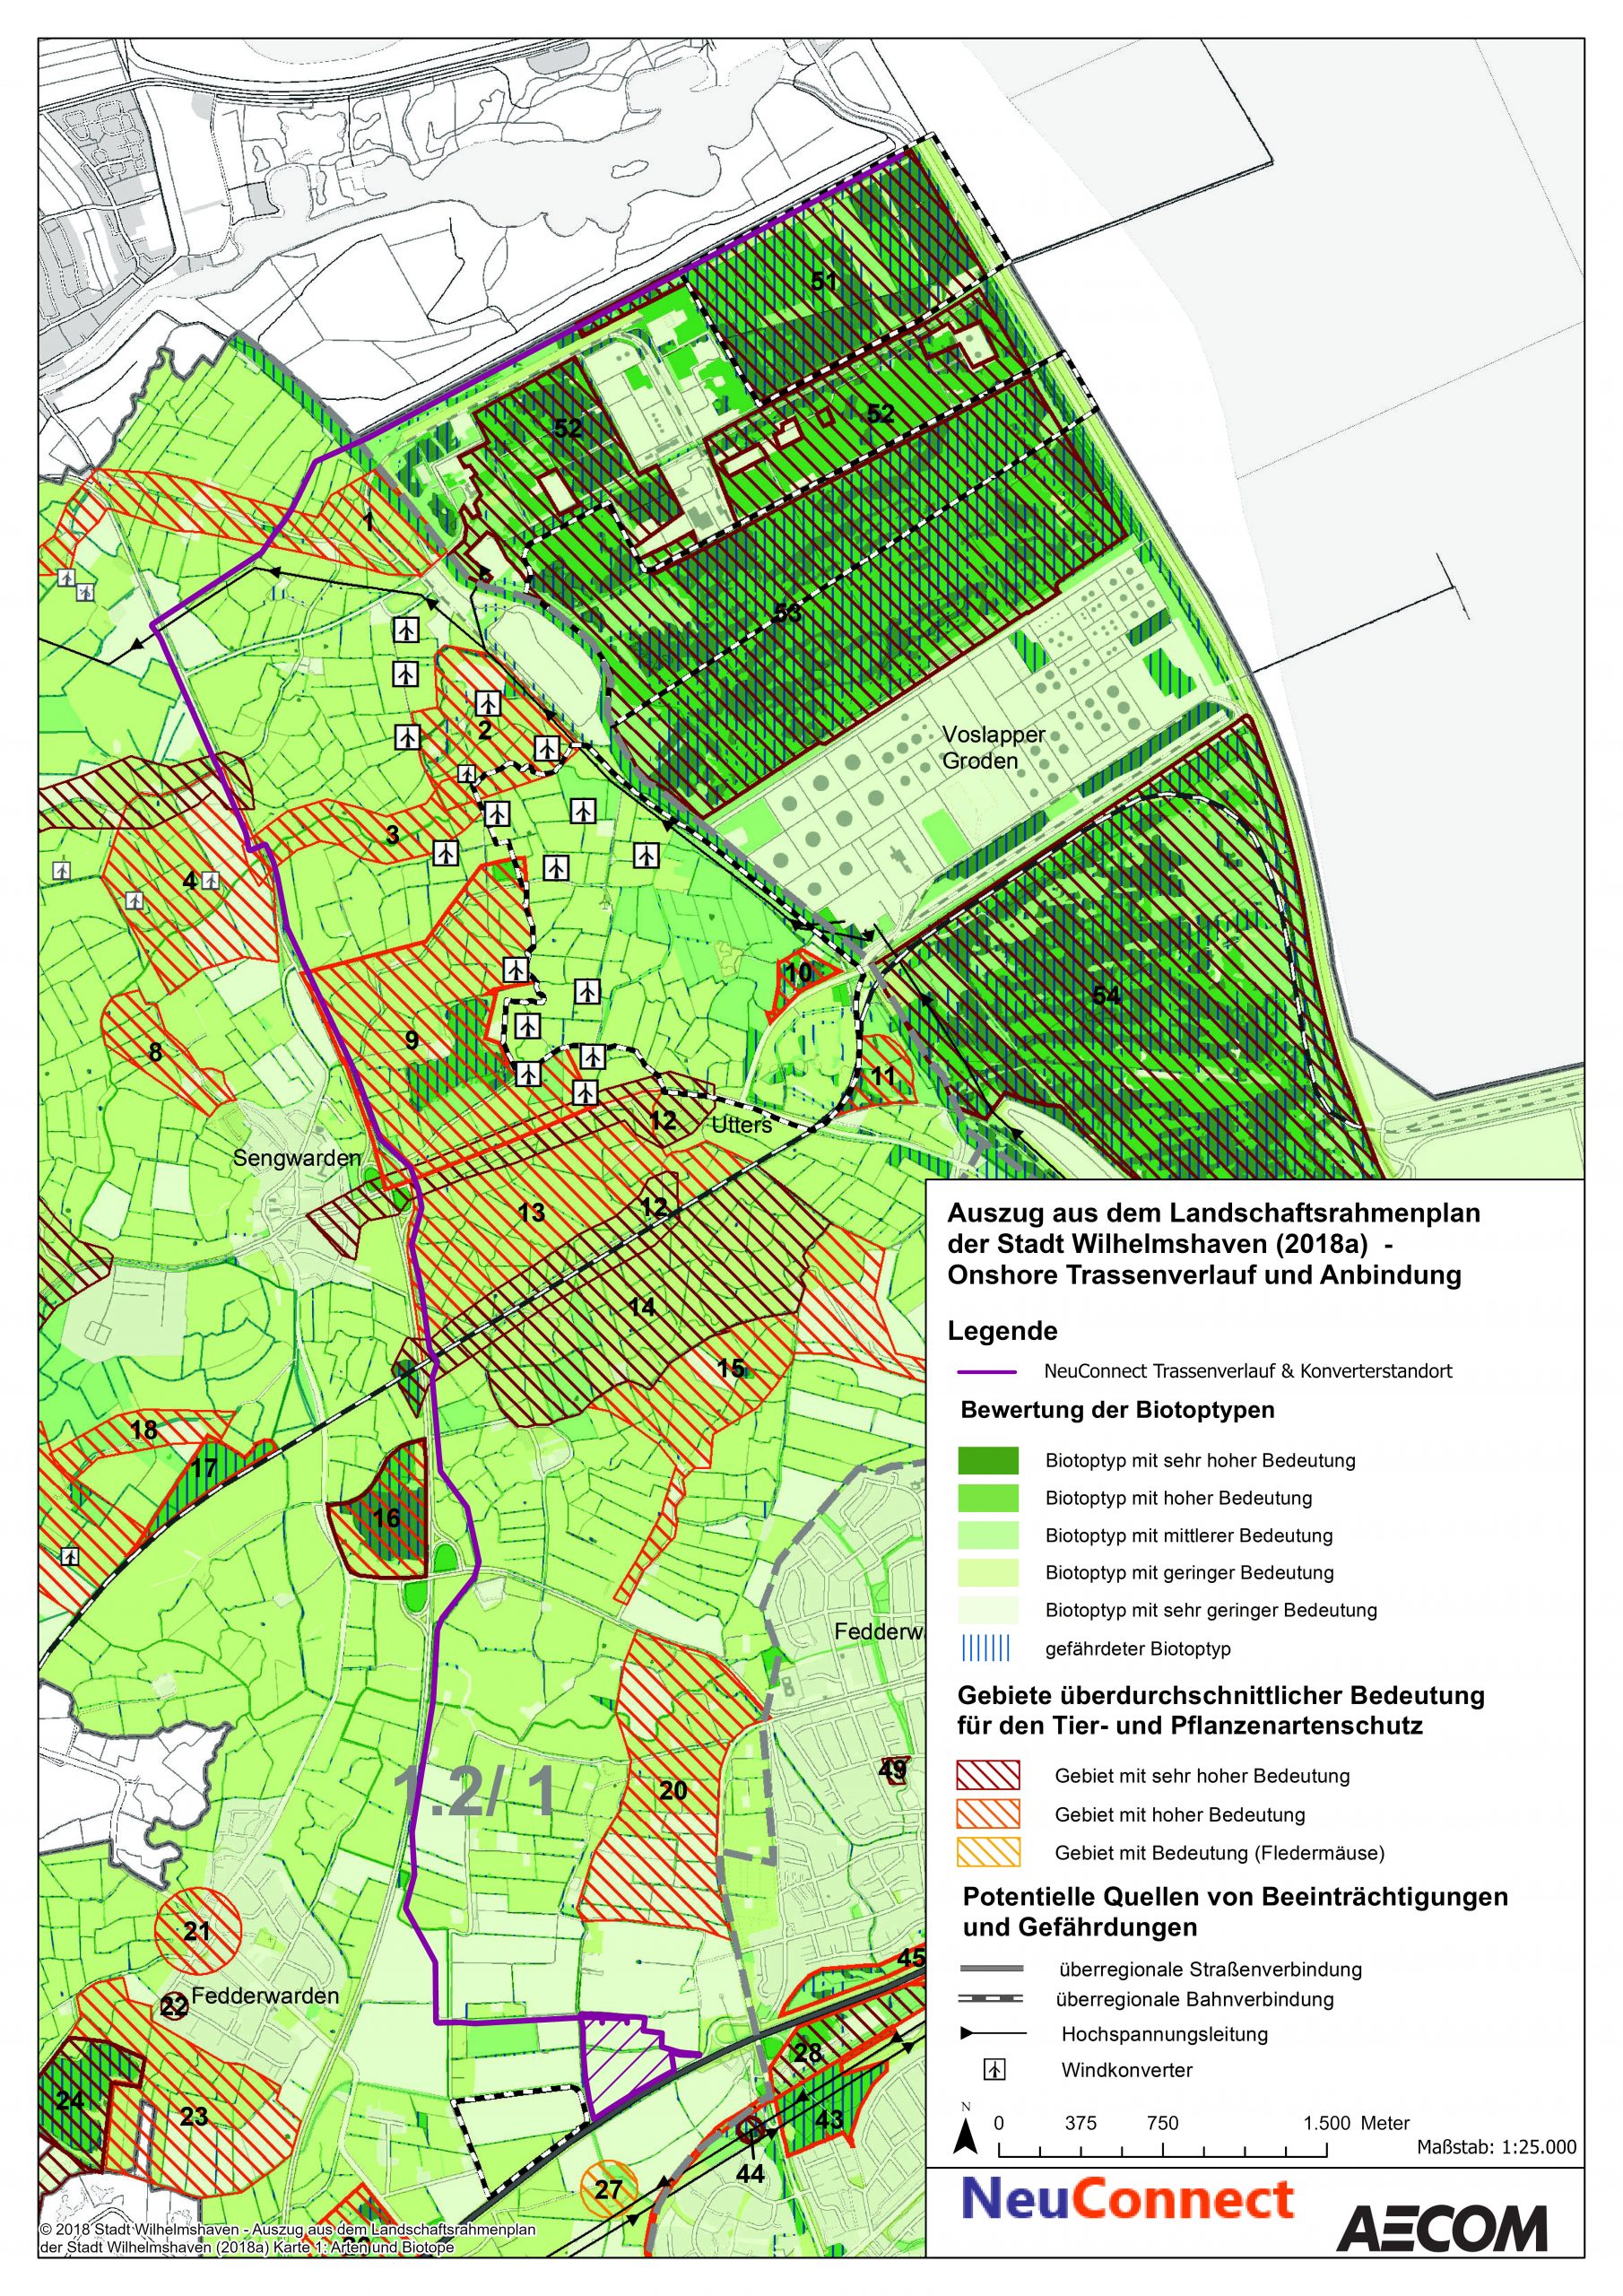 Auszug aus dem Landschaftsrahmenplan der Stadt Wilhelmshaven (2018a) mit eingezogenem beantragten Verlauf der NeuConnect Landtrasse